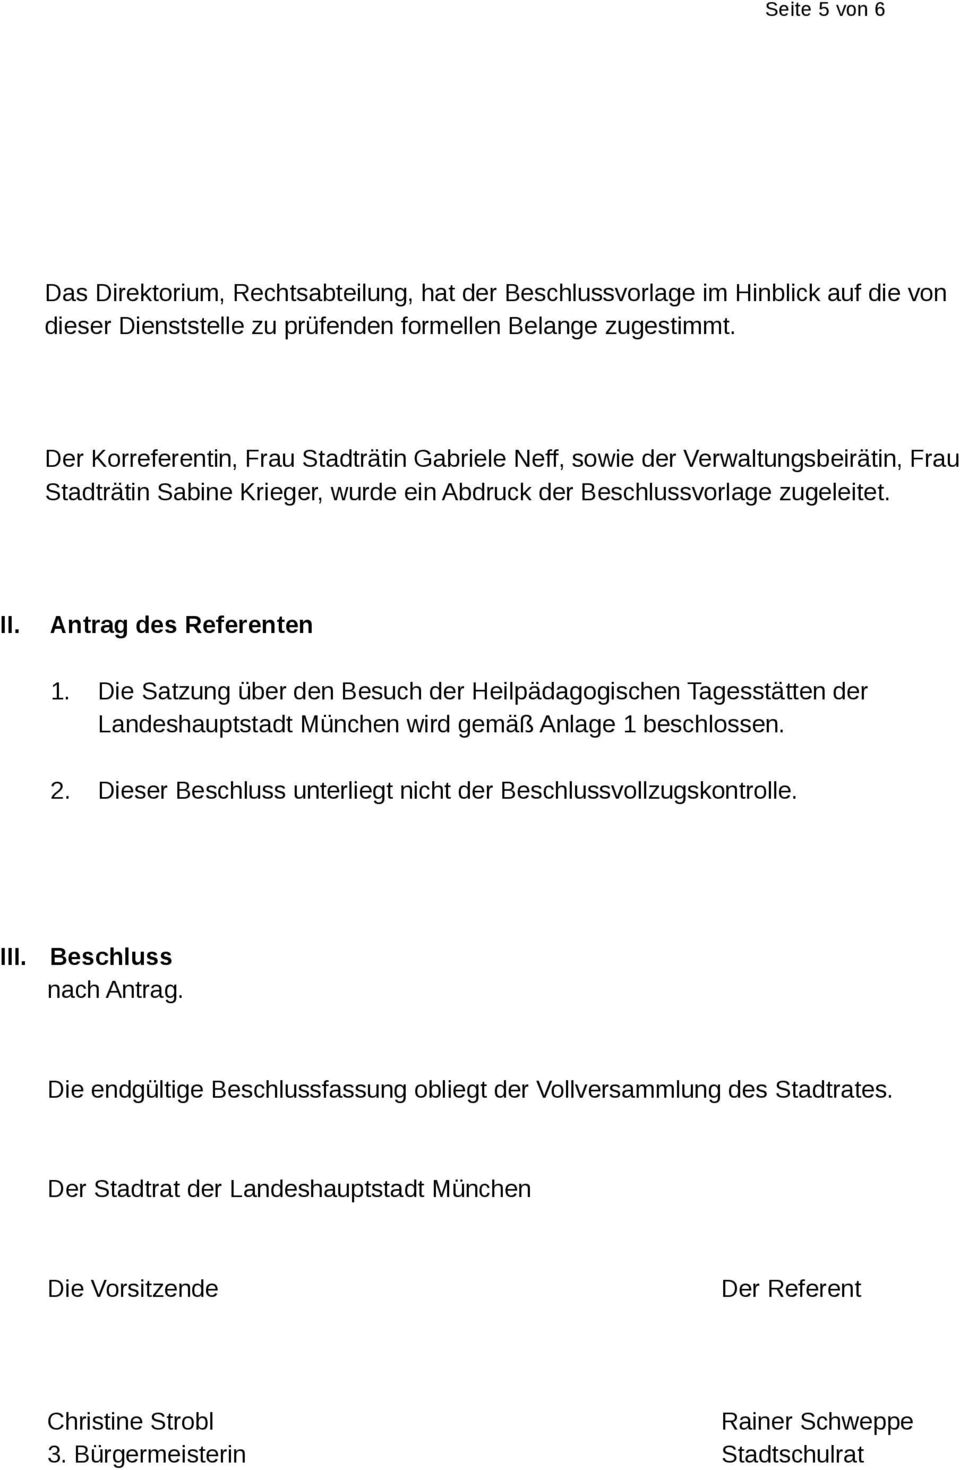 Die Satzung über den Besuch der Heilpädagogischen Tagesstätten der Landeshauptstadt München wird gemäß Anlage 1 beschlossen. 2. Dieser Beschluss unterliegt nicht der Beschlussvollzugskontrolle.